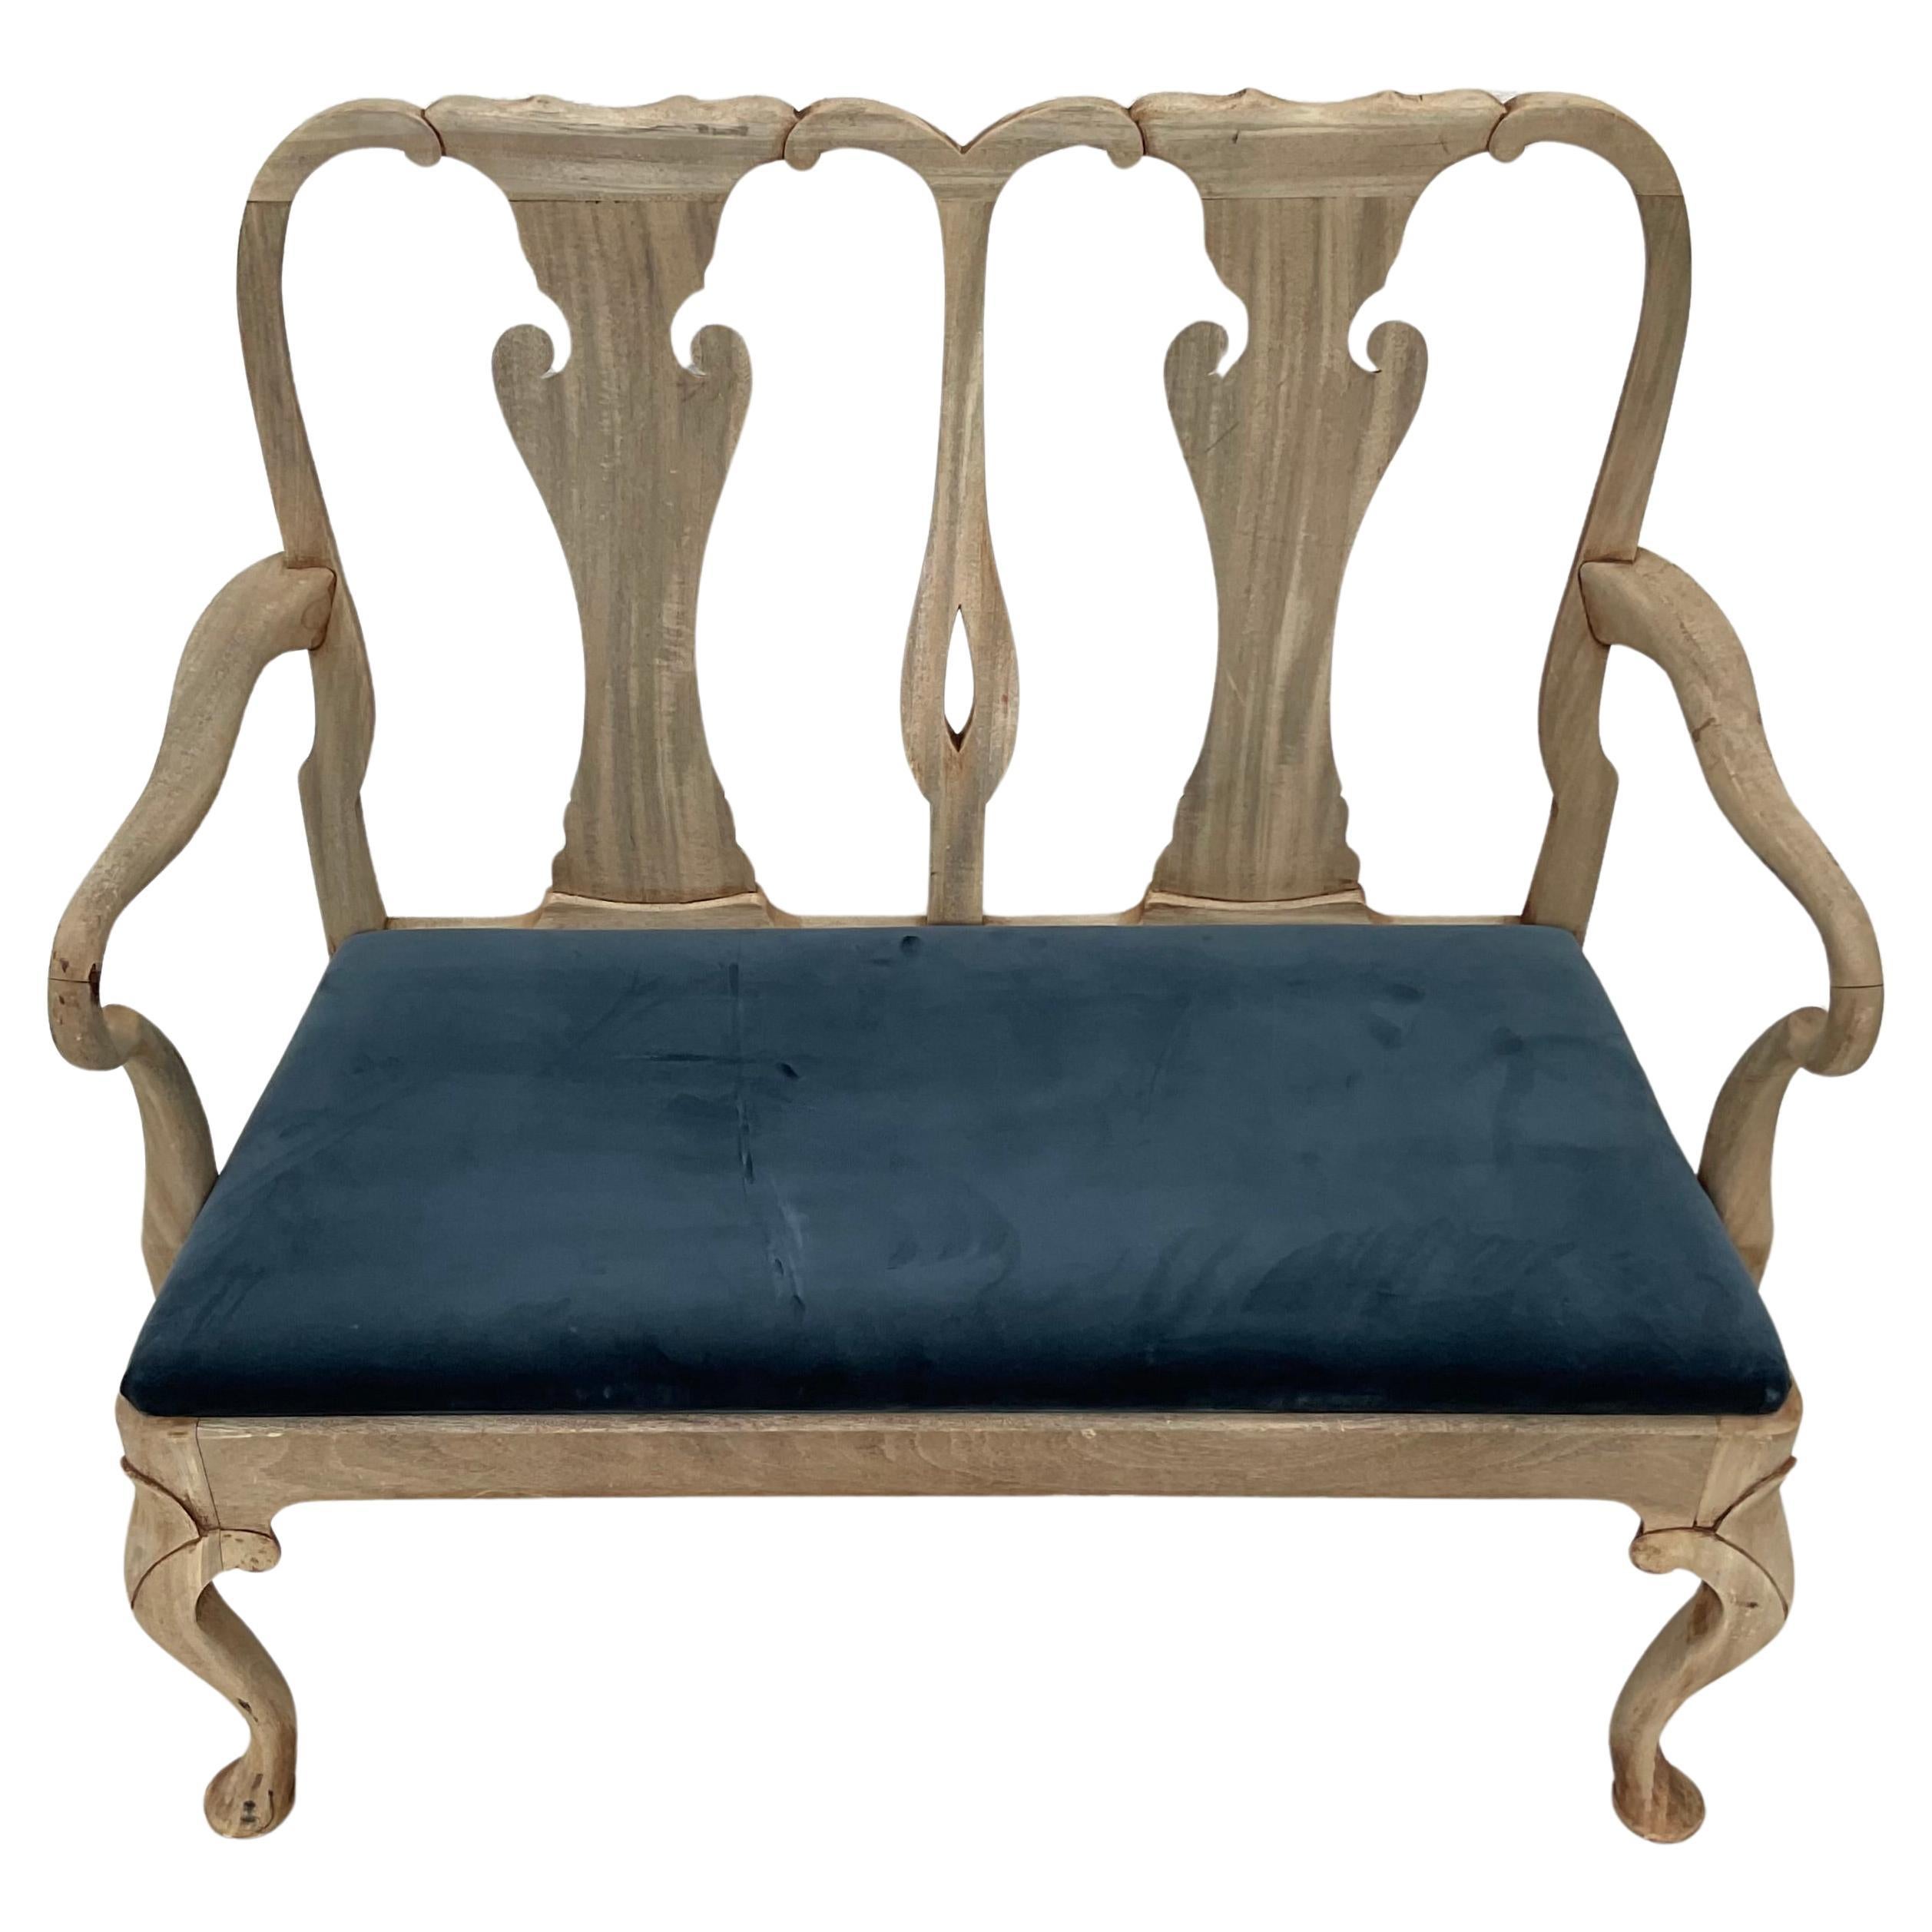 Queen-Anne-Sofa aus dem 19. Jahrhundert. Eigenschaften Wunderschönes gebleichtes Holz mit schönem französisch-blauem Sitzkissen. Schöne geschwungene Arme und Cabriole Beine mit Krallenfüßen. Die perfekte Bank für den Eingangsbereich, den Flur oder